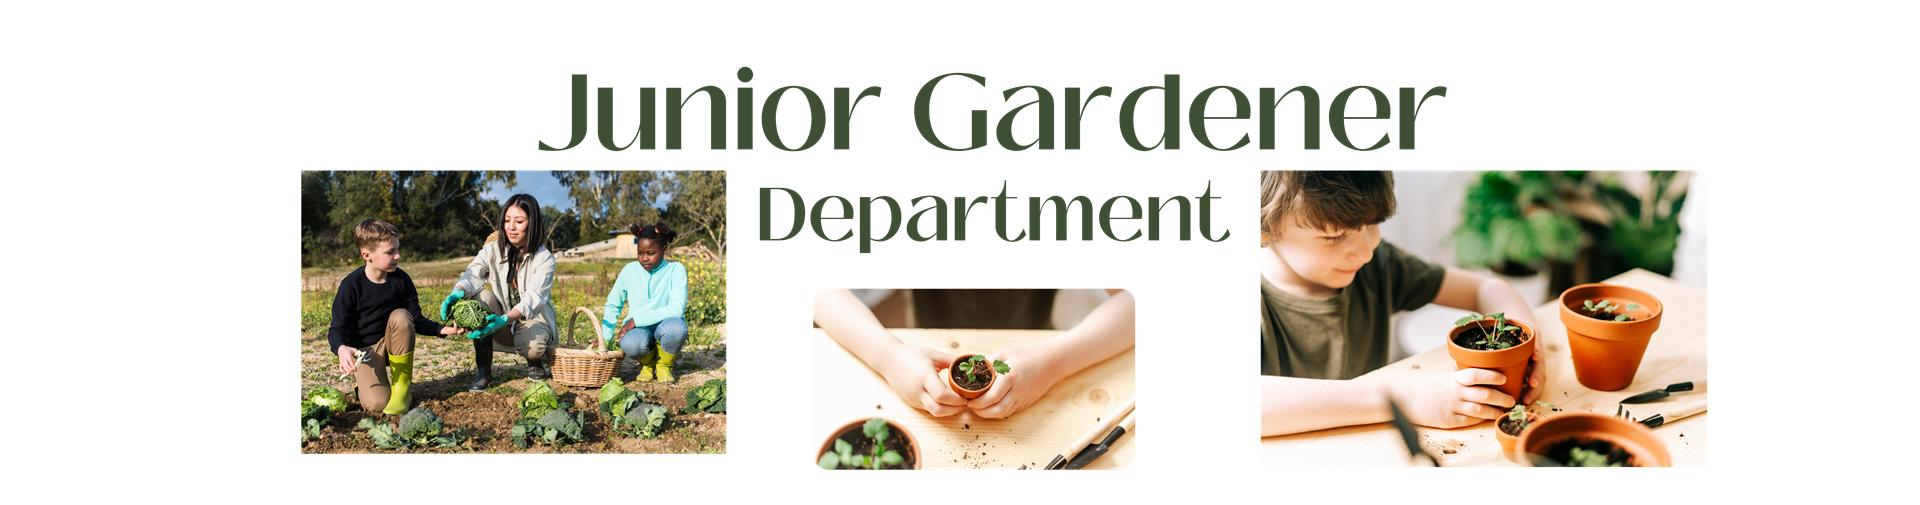 Junior Gardener Department